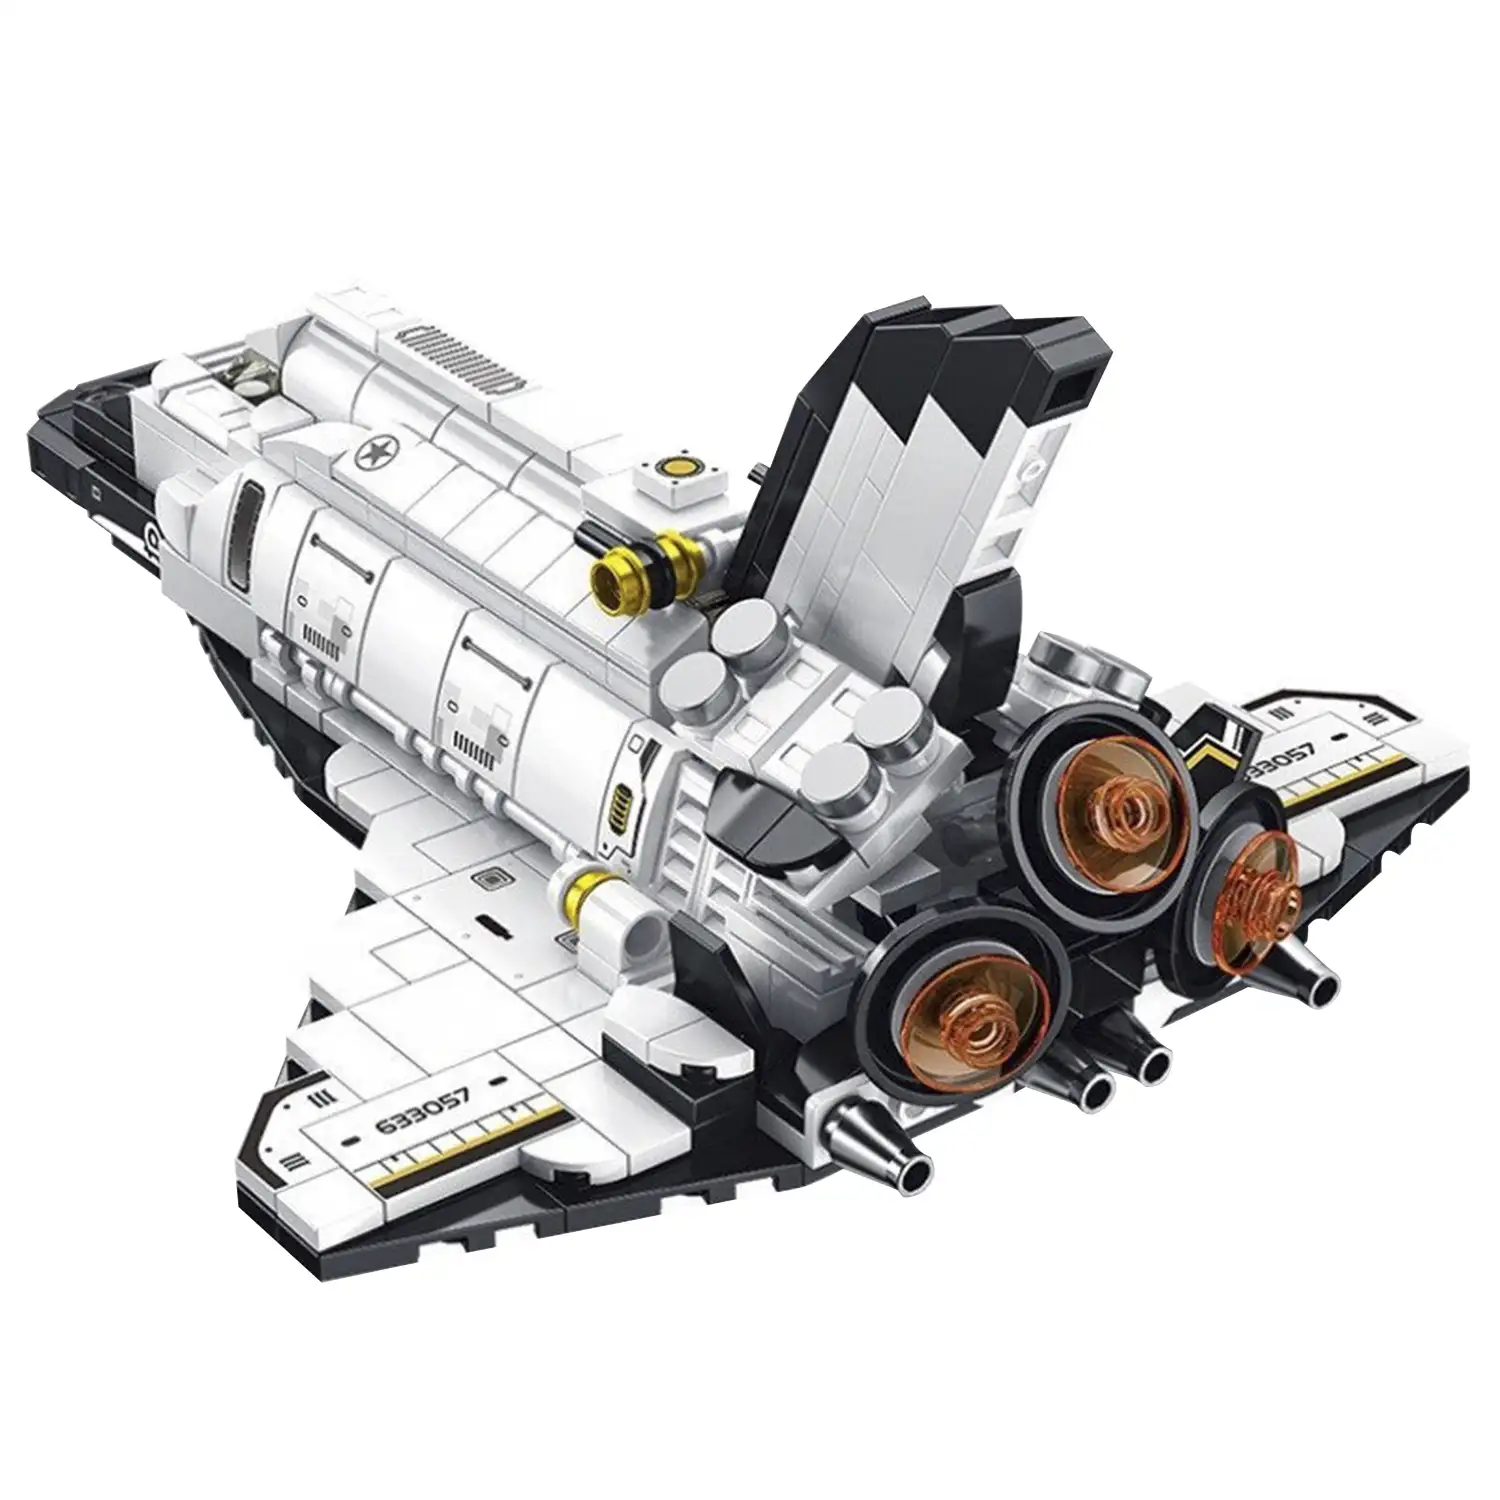 Transbordador espacial 12 en 1, con 586 piezas. Construye 12 modelos individuales con 2 formas cada uno.